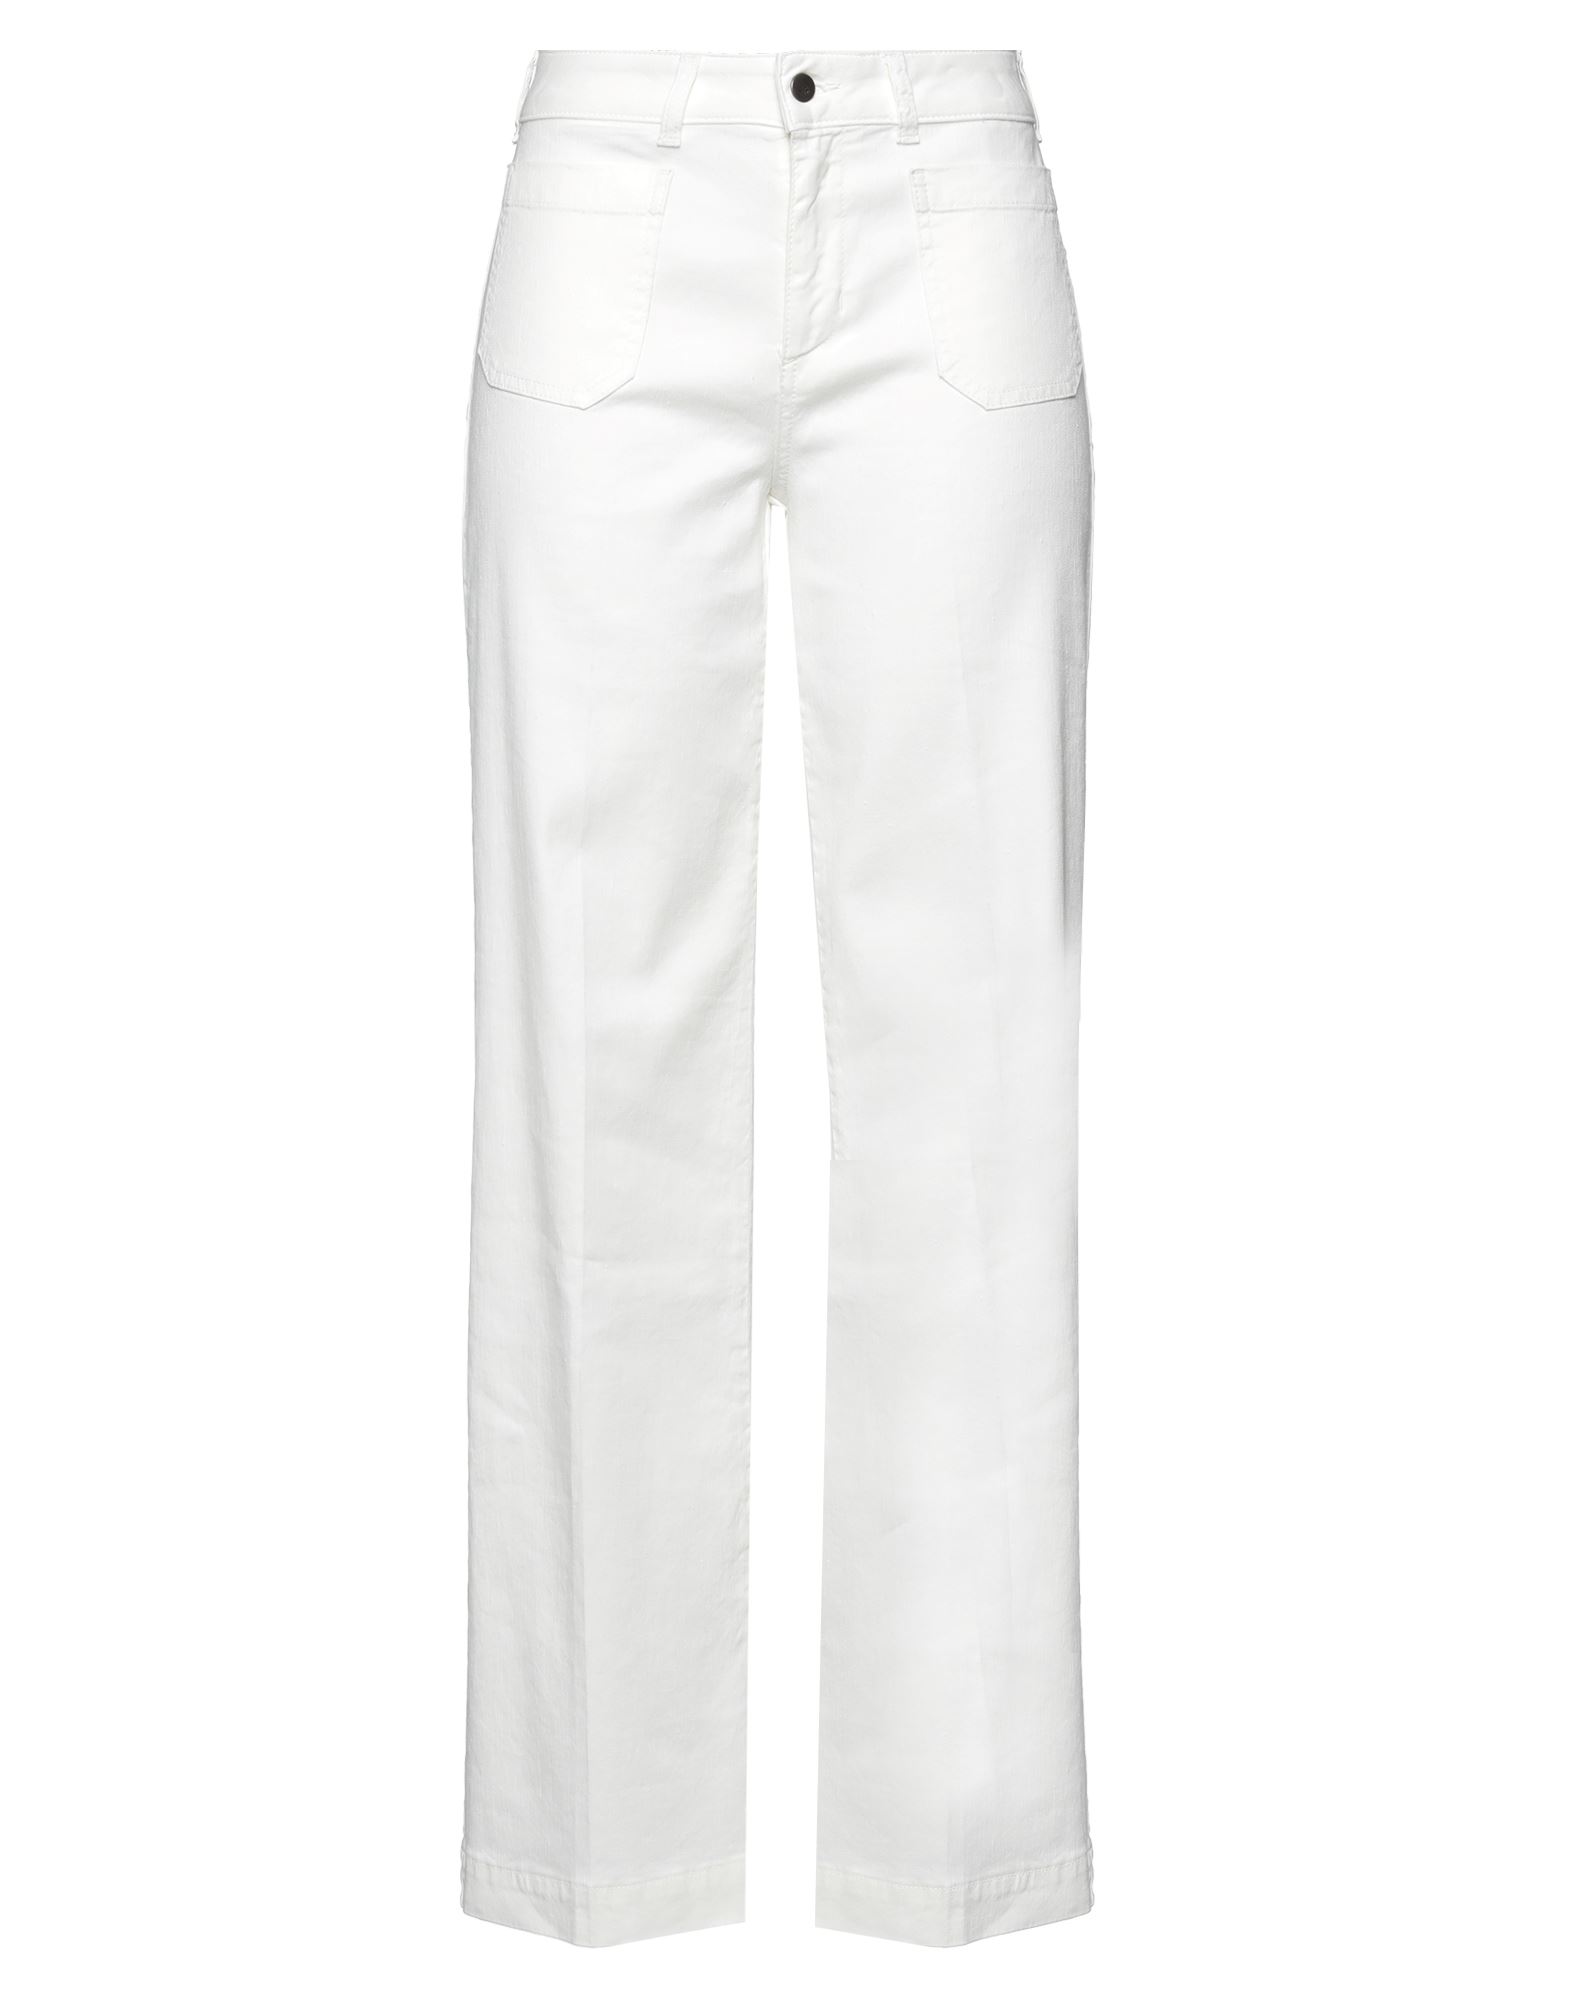 Cigala's Woman Jeans White Size 29 Linen, Cotton, Elastane